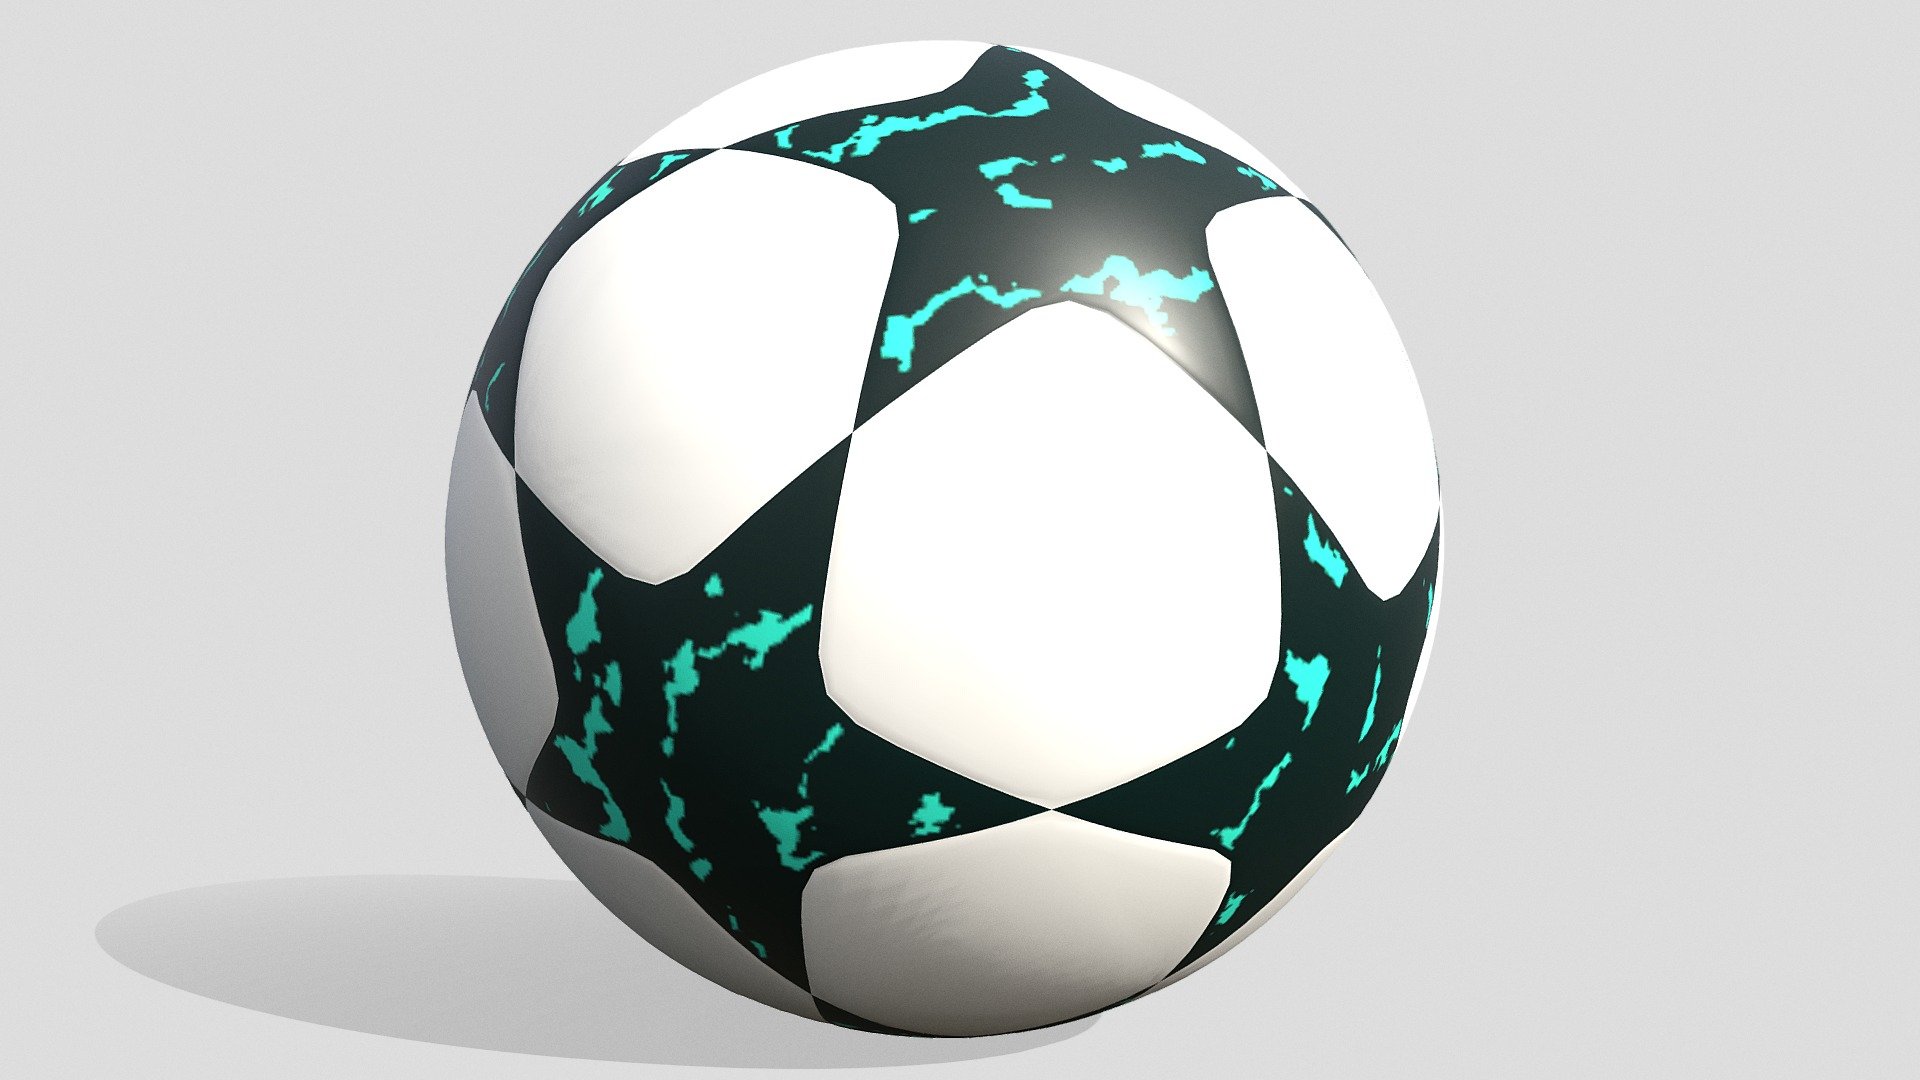 concept ball - Champions ball - Buy Royalty Free 3D model by Shin Xiba 3D (@Xiba3D) 3d model